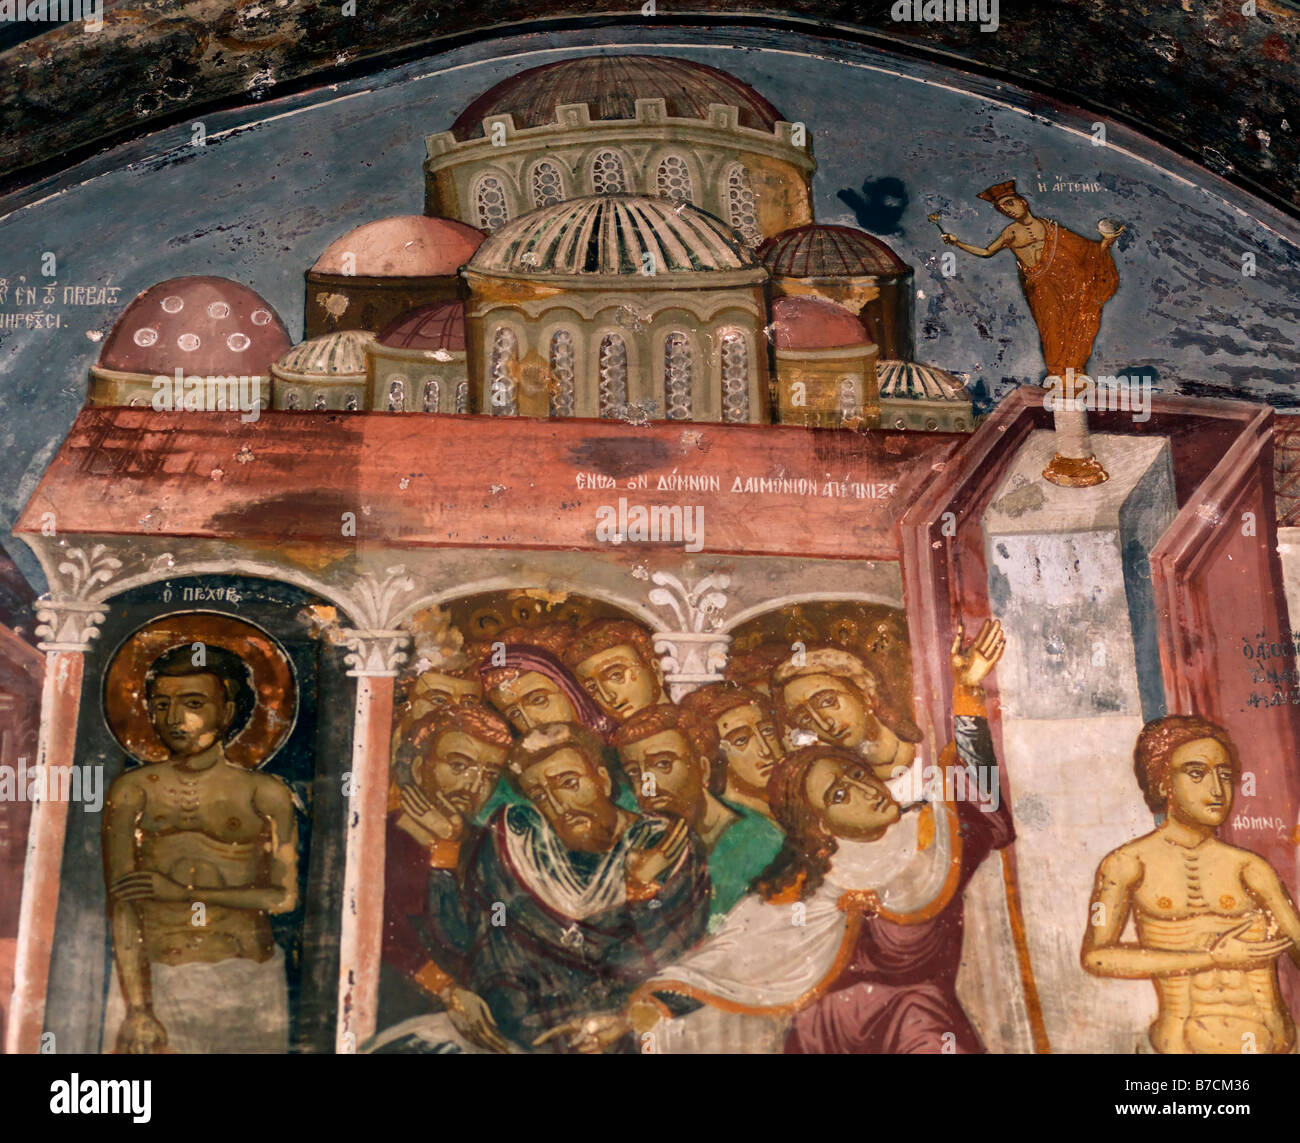 Fresque représentant des personnes prenant refuge dans le monastère St Johns Chora Patmos GreeceCommemorate le site où Saint John de Patmos Composé son Evangile et l'Apocalypse Banque D'Images